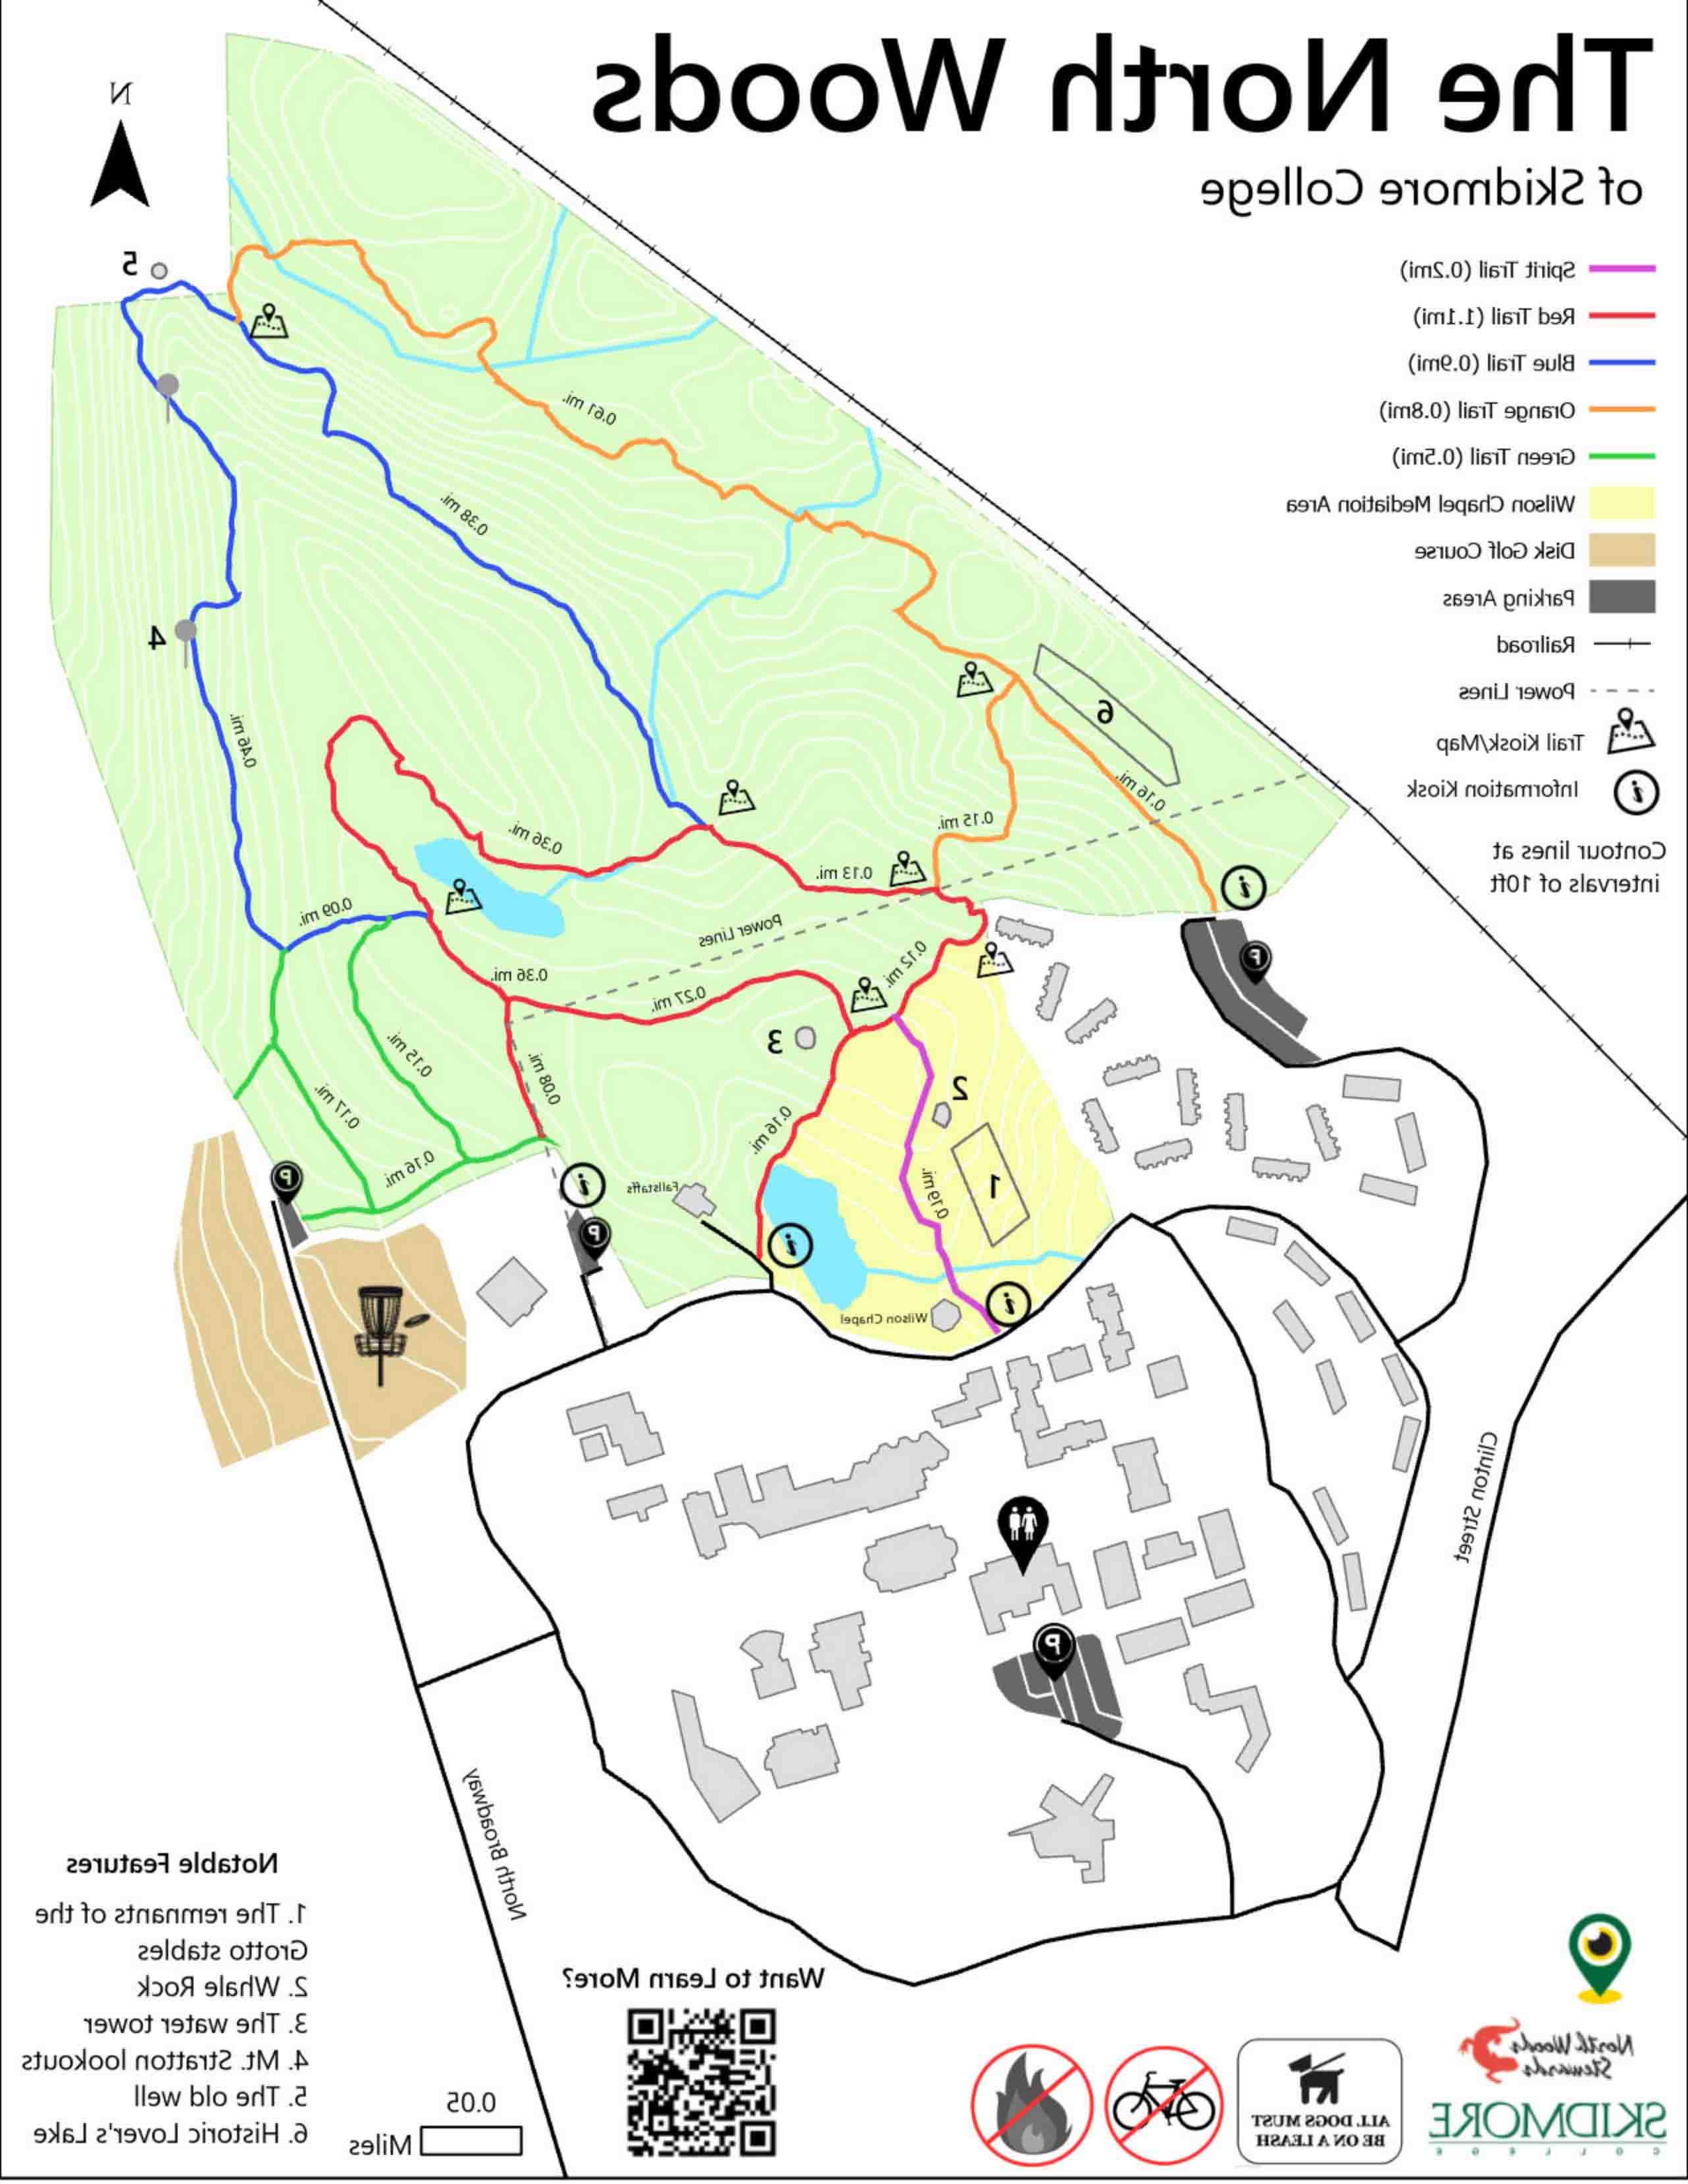 图片中以绿色高亮显示陆地区域，以浅黄色显示飞盘高尔夫. 3英里的步道包括紫色、绿色、蓝色、橙色和红色部分.